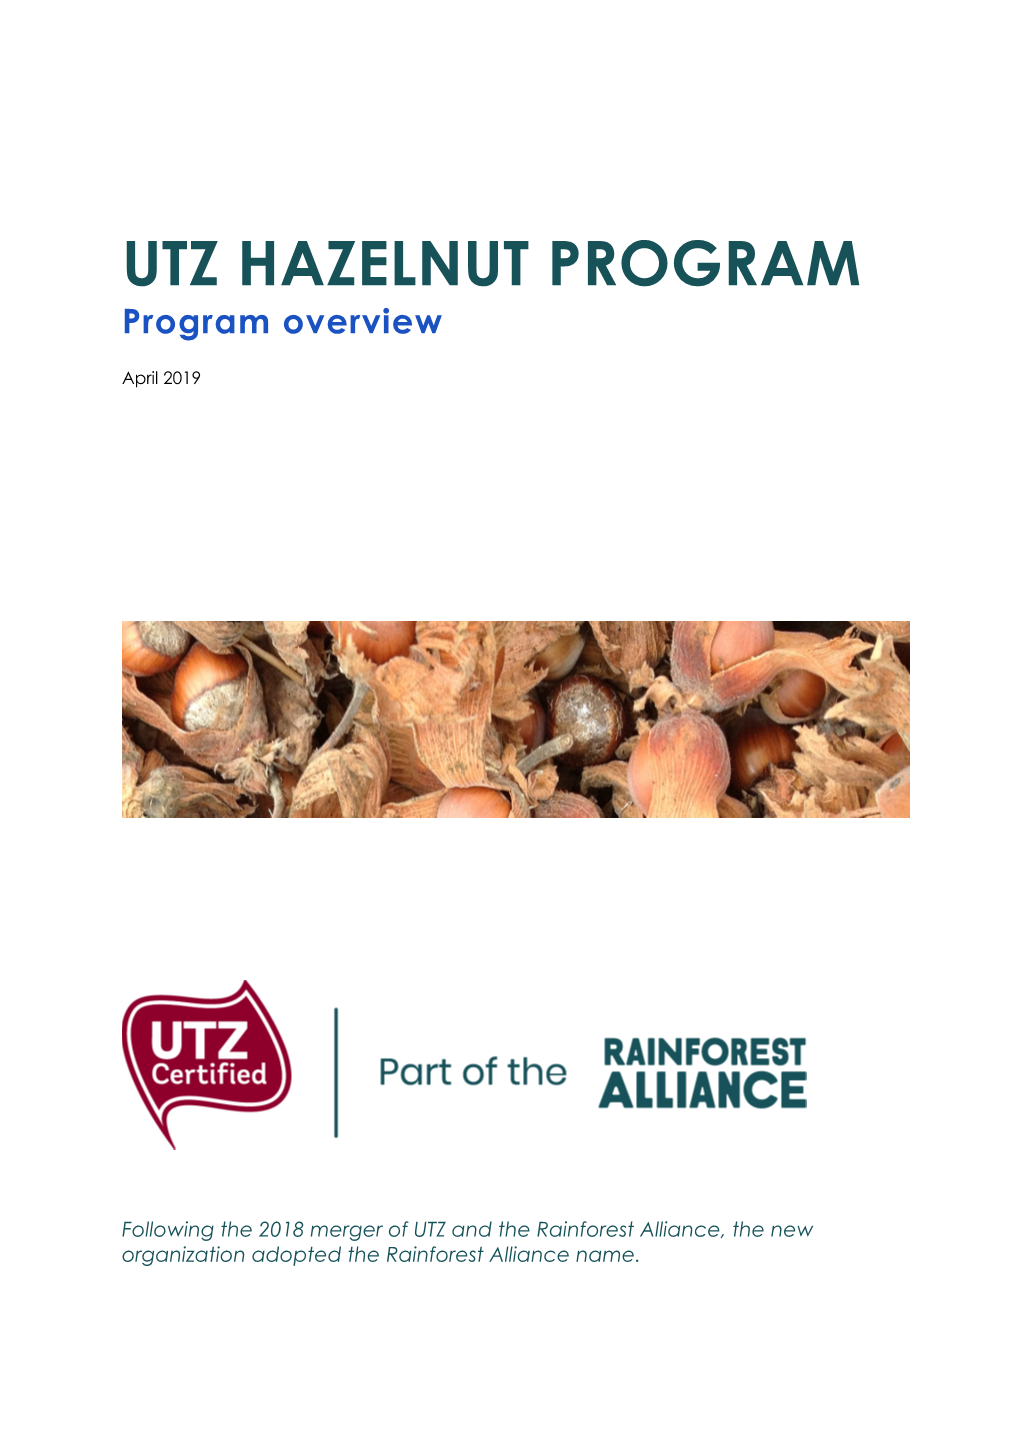 1904 Hazelnut Program Overview